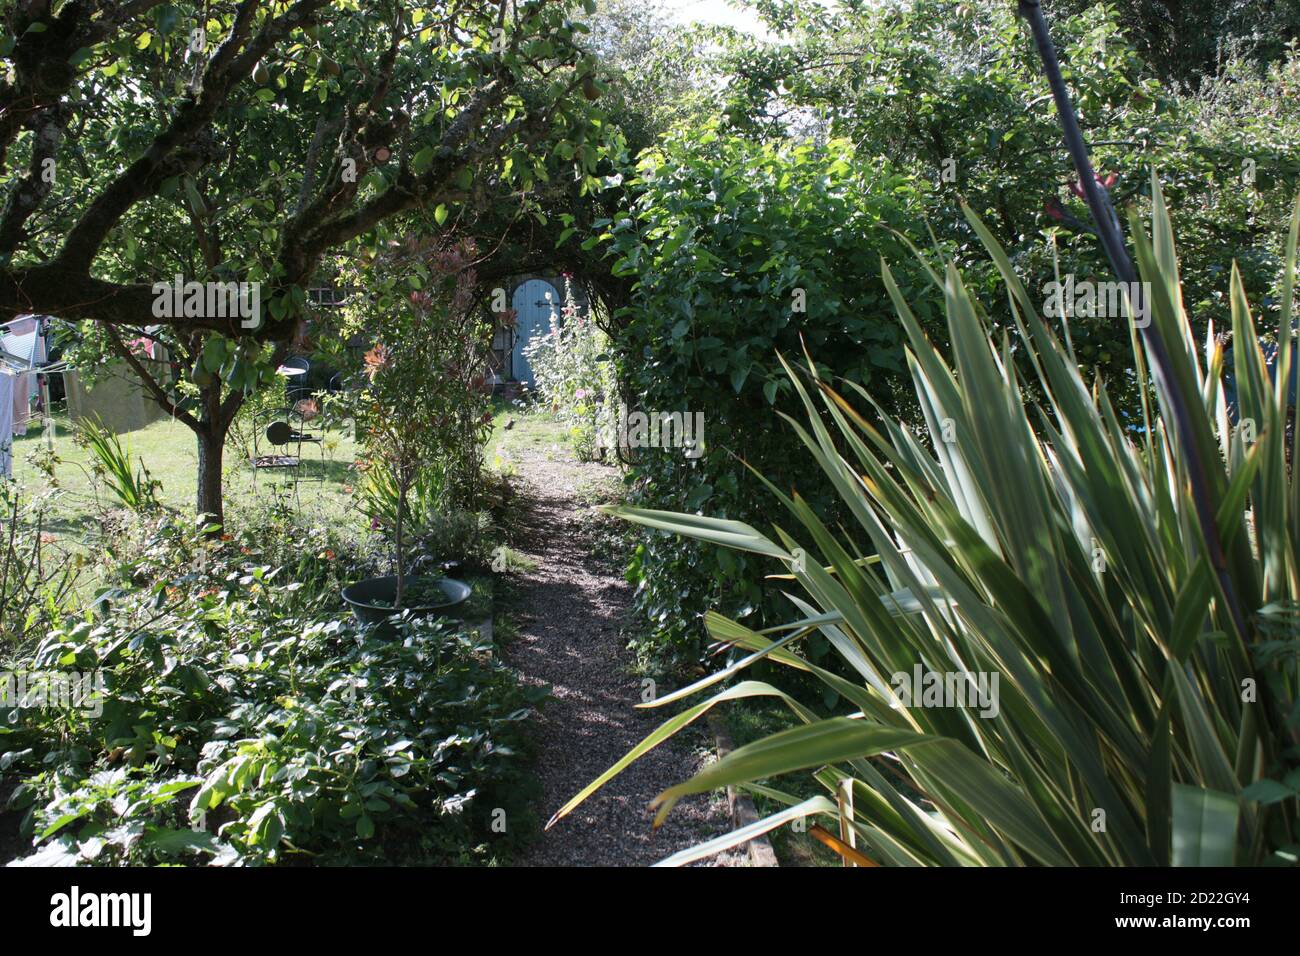 Vista sul paesaggio nel giardino estivo di campagna inglese con pera di espalier albero con frutta lavanda rosa arco fiori cespuglio erba prato & piante & porta segreta Foto Stock